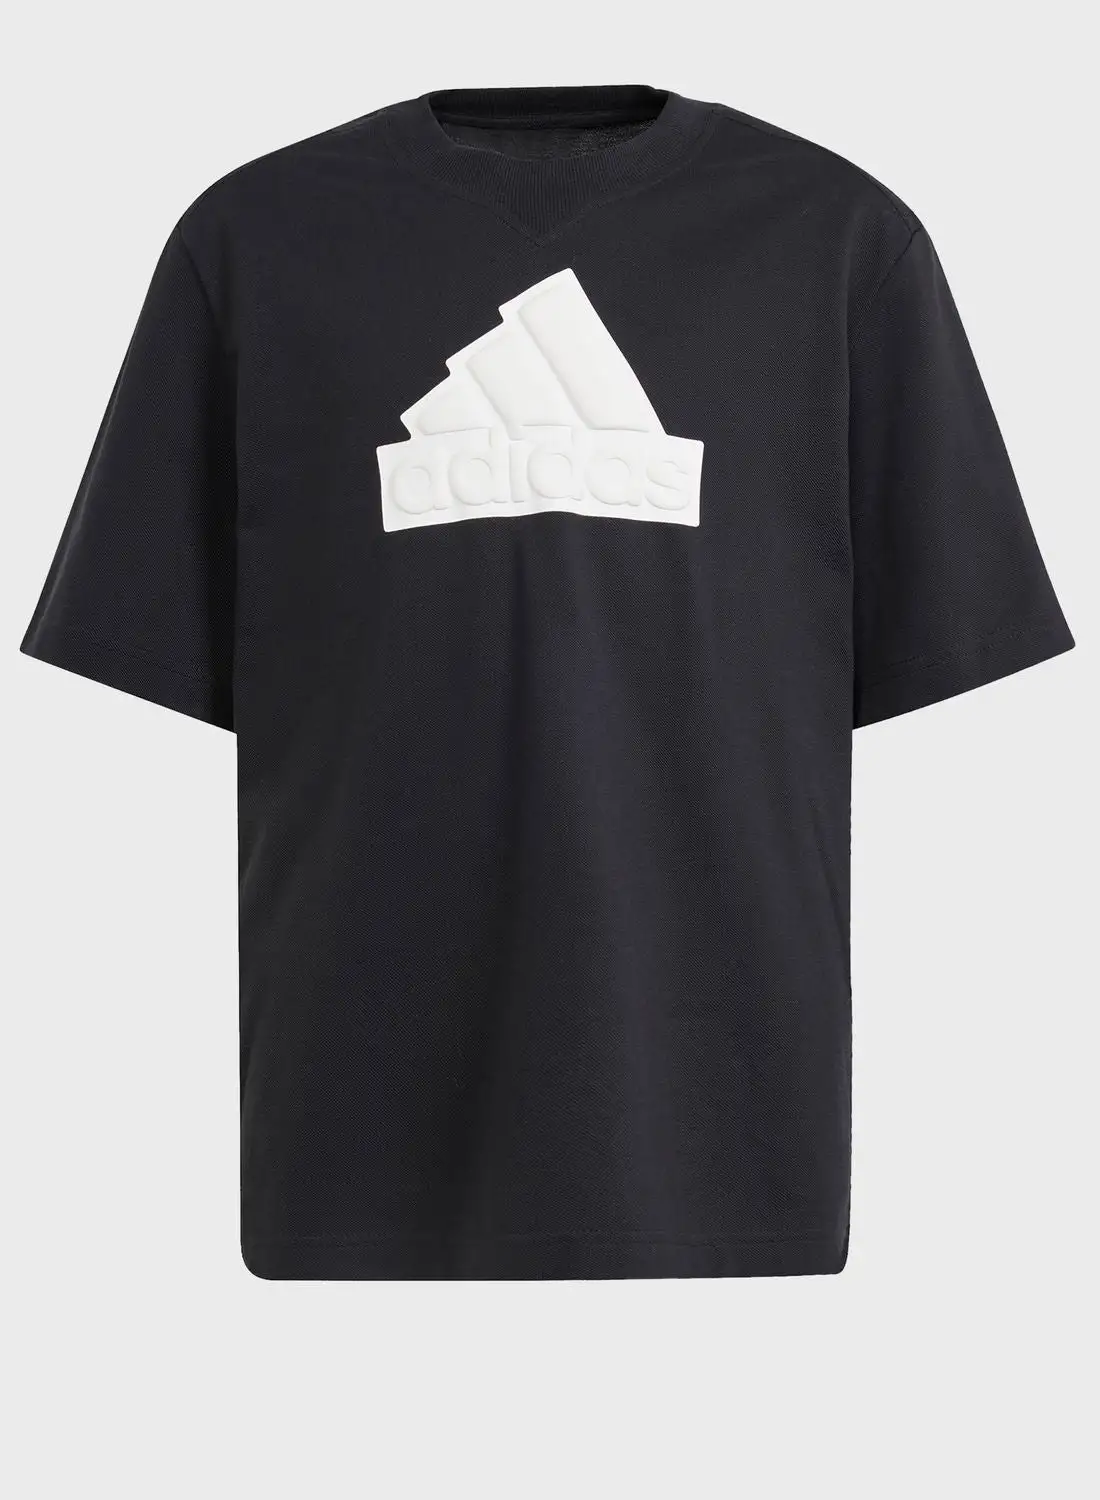 Adidas Kids Logo T-Shirt